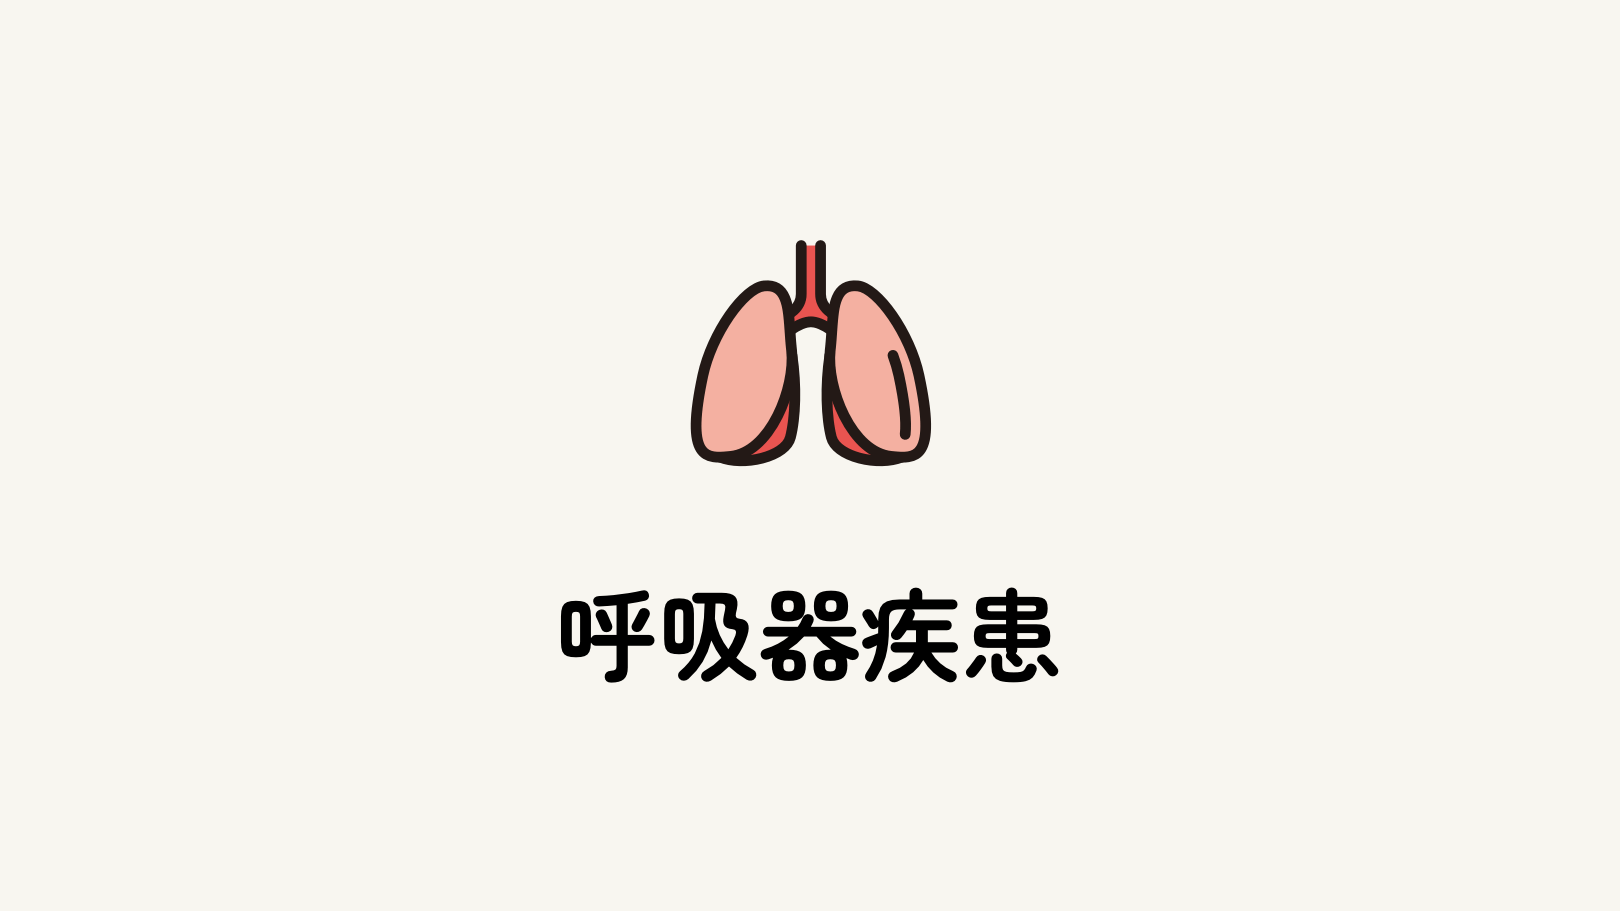 呼吸器疾患